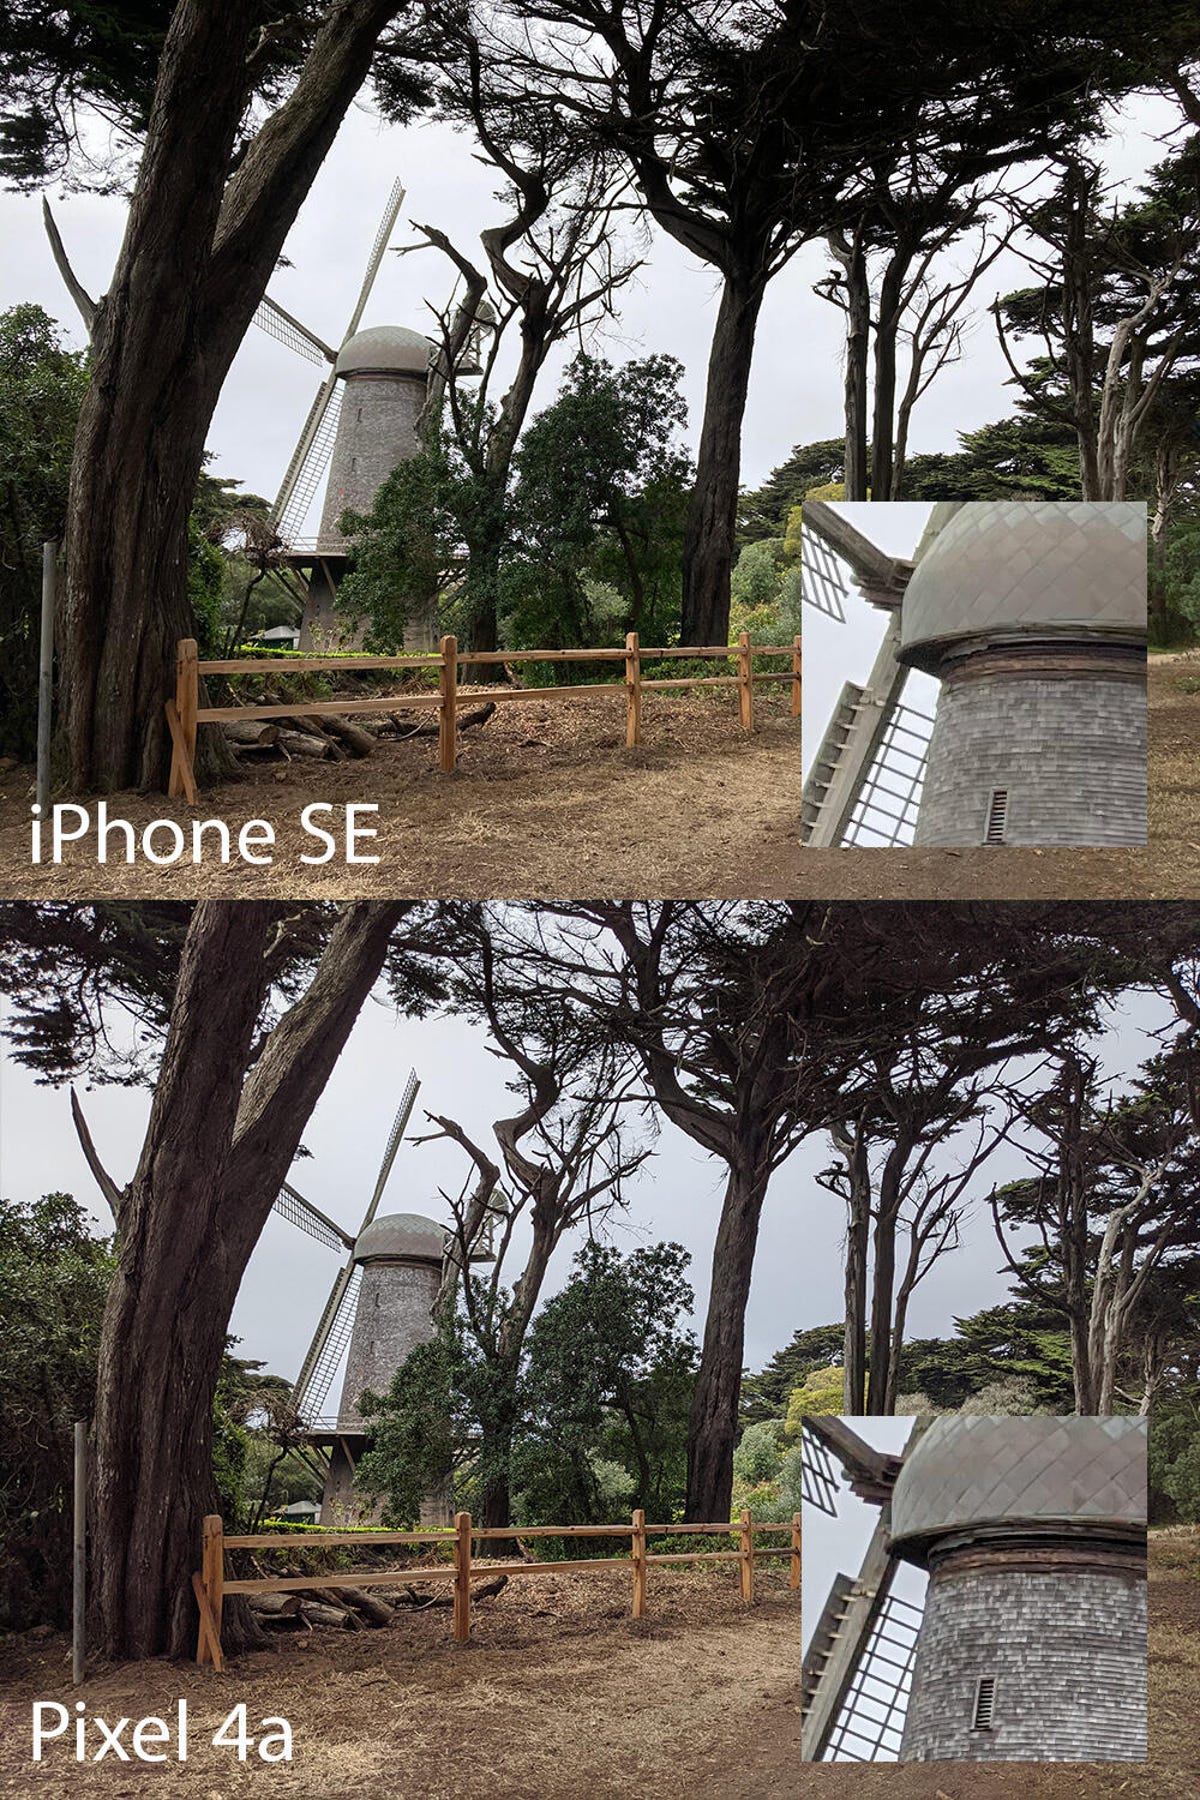 iphone-se-pixel-4a-comparison